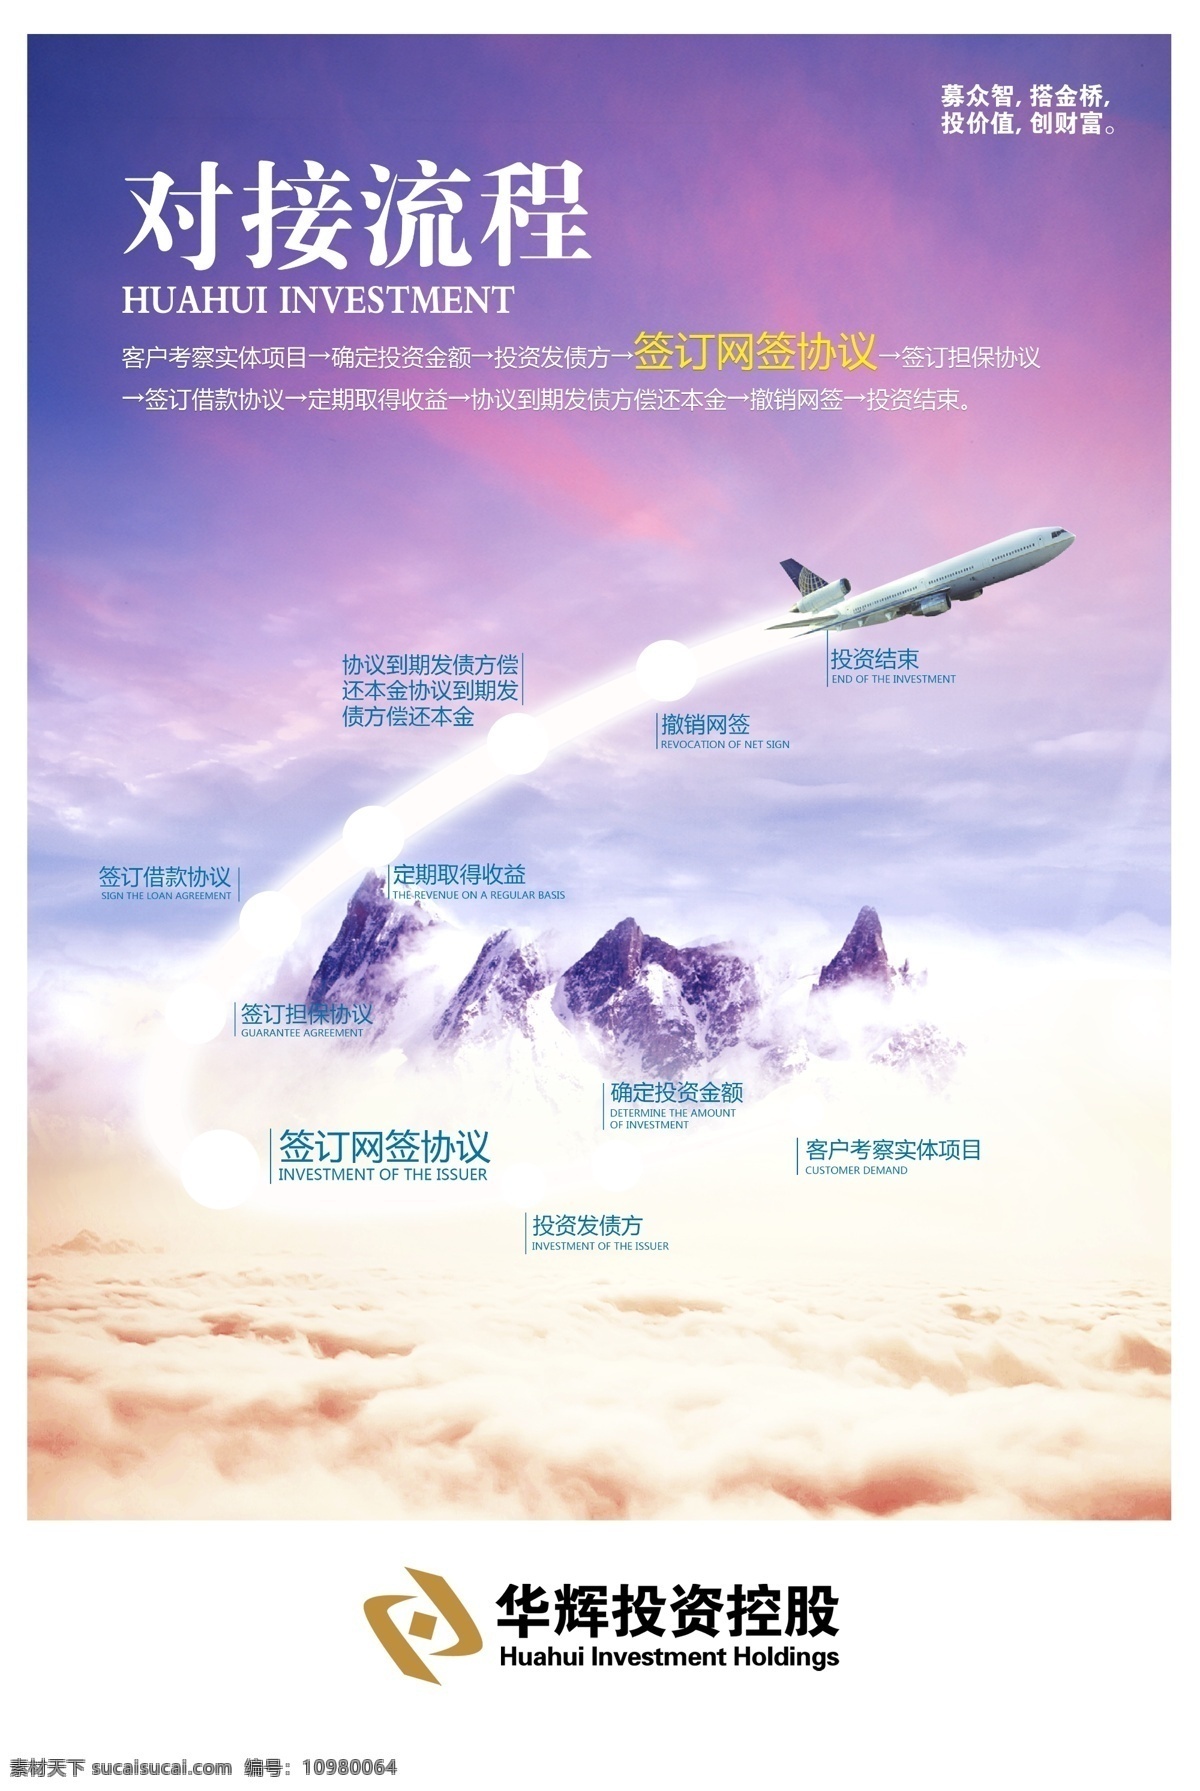 流程表 企业展板 psd素材 金融 流程图 企业海报 投资 企业单页 飞机 企业背景图 企业文化 白色